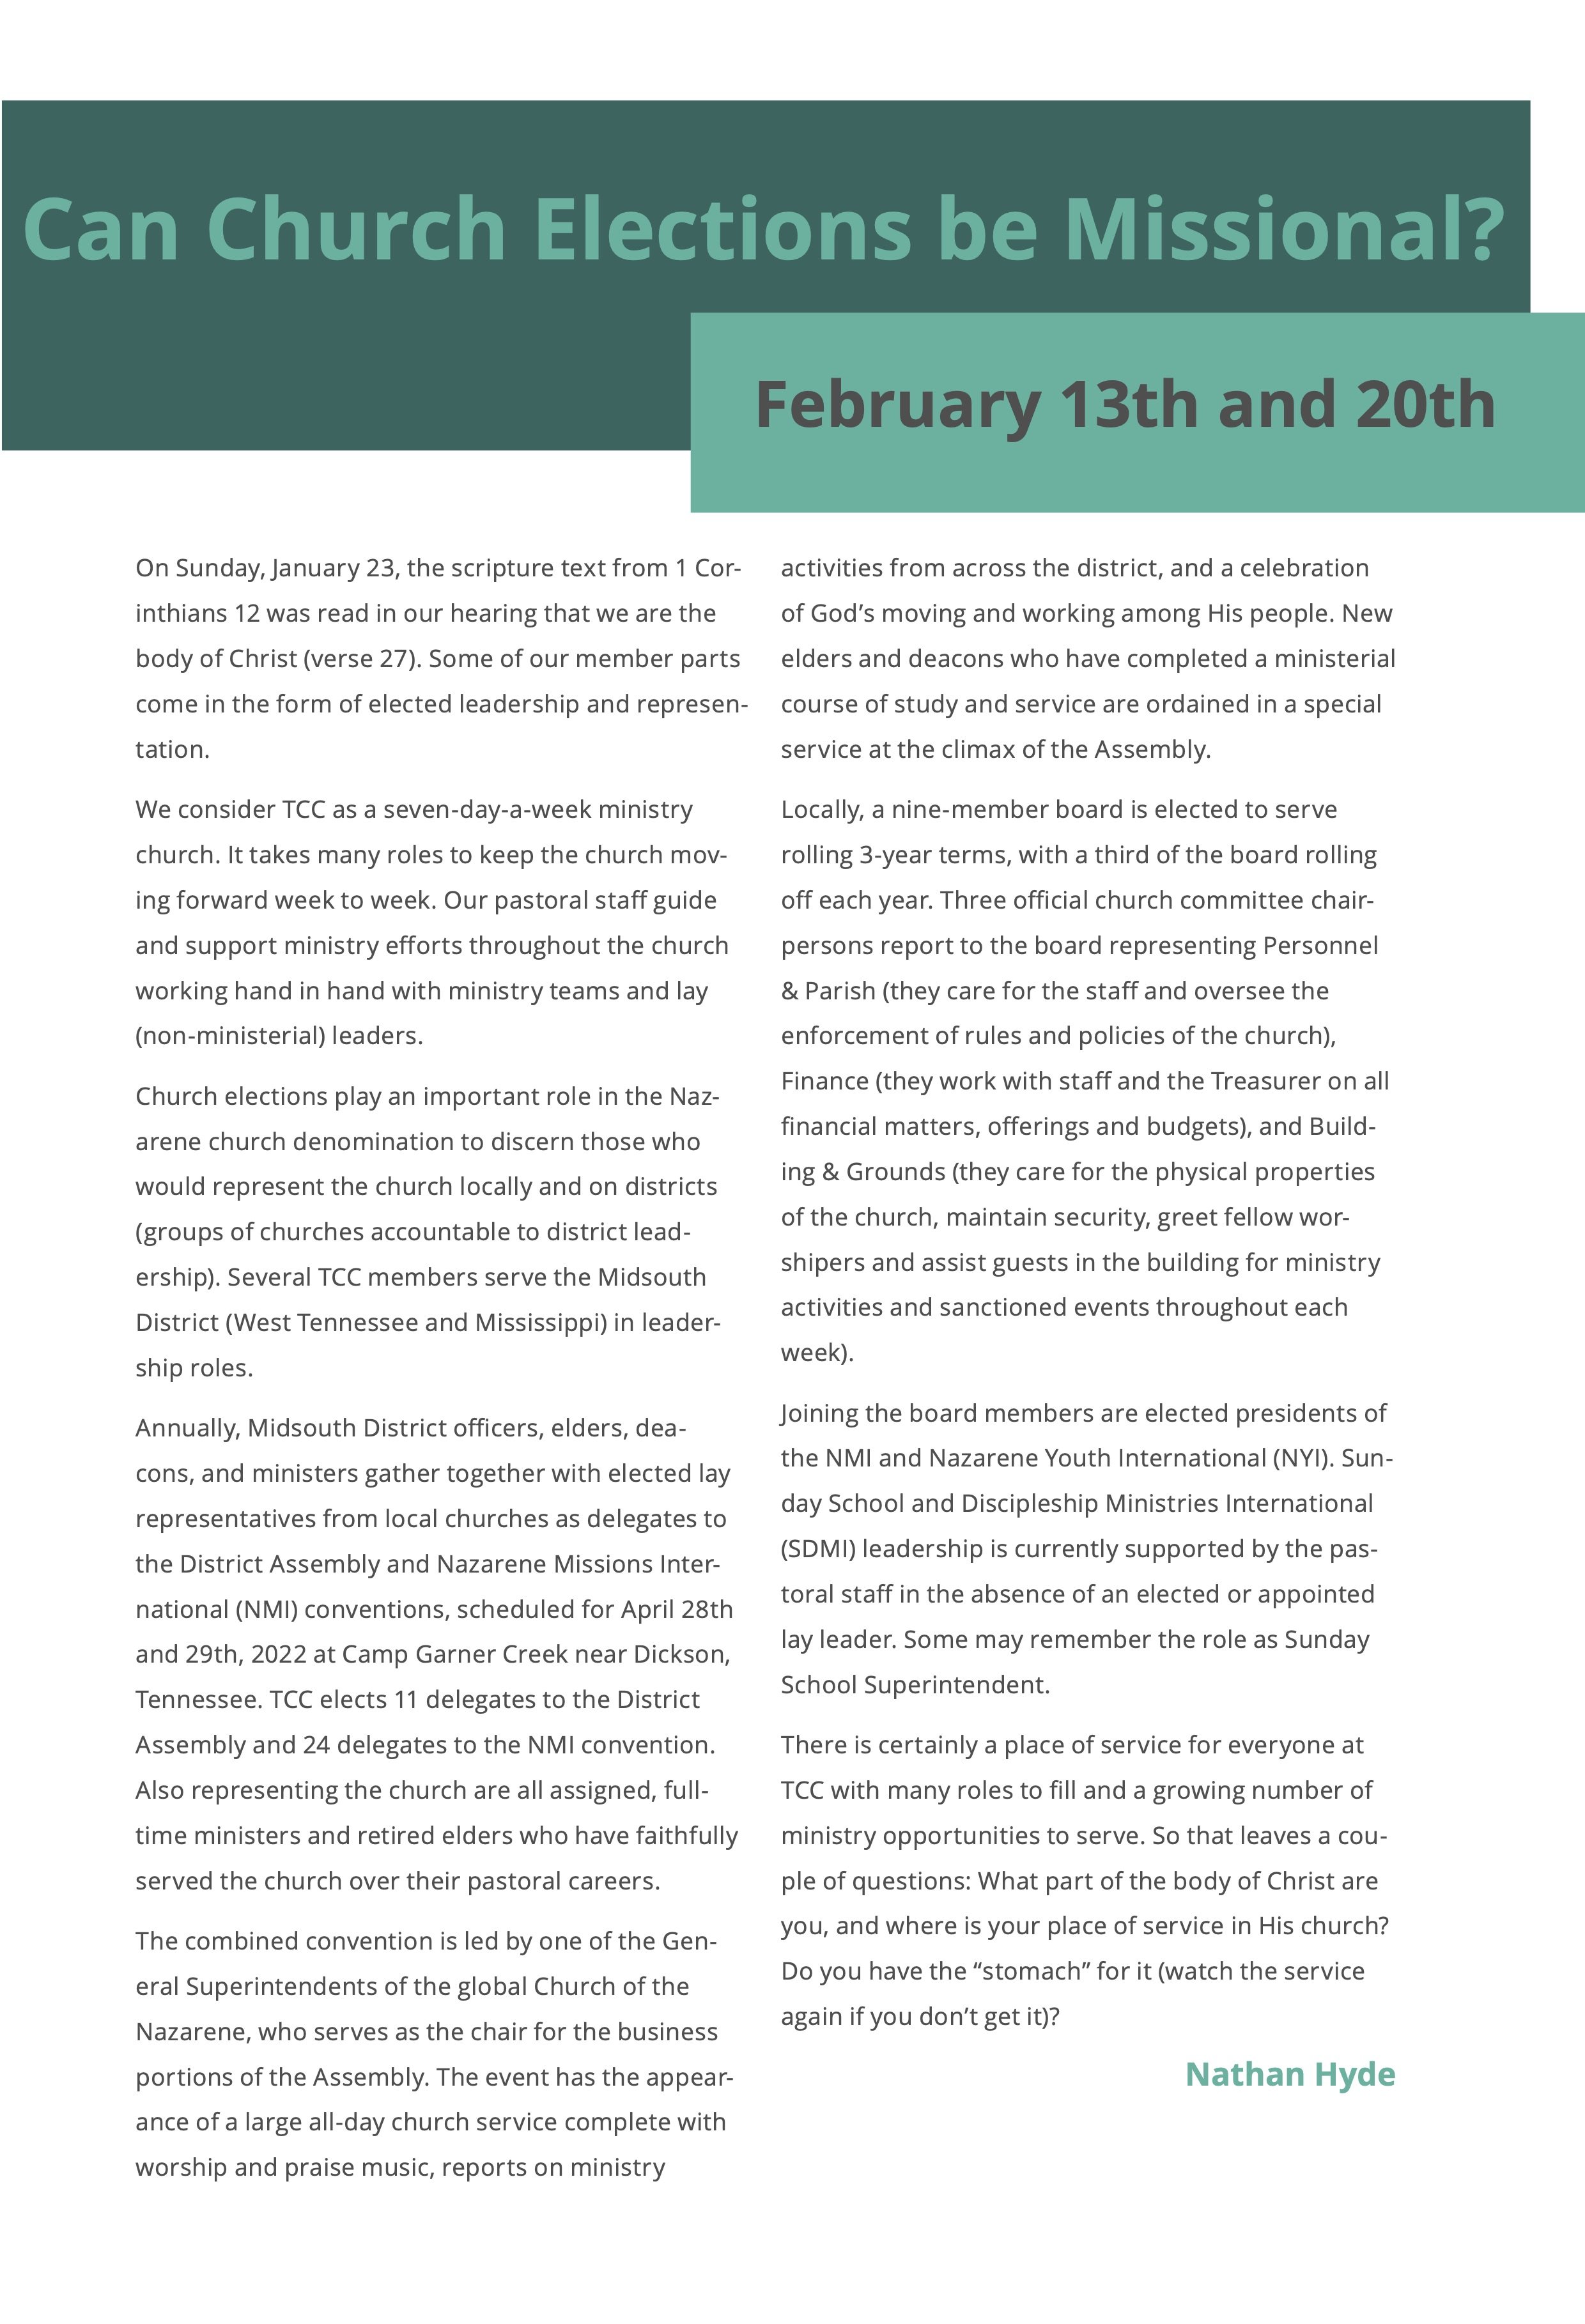 February Newsletter6.jpg